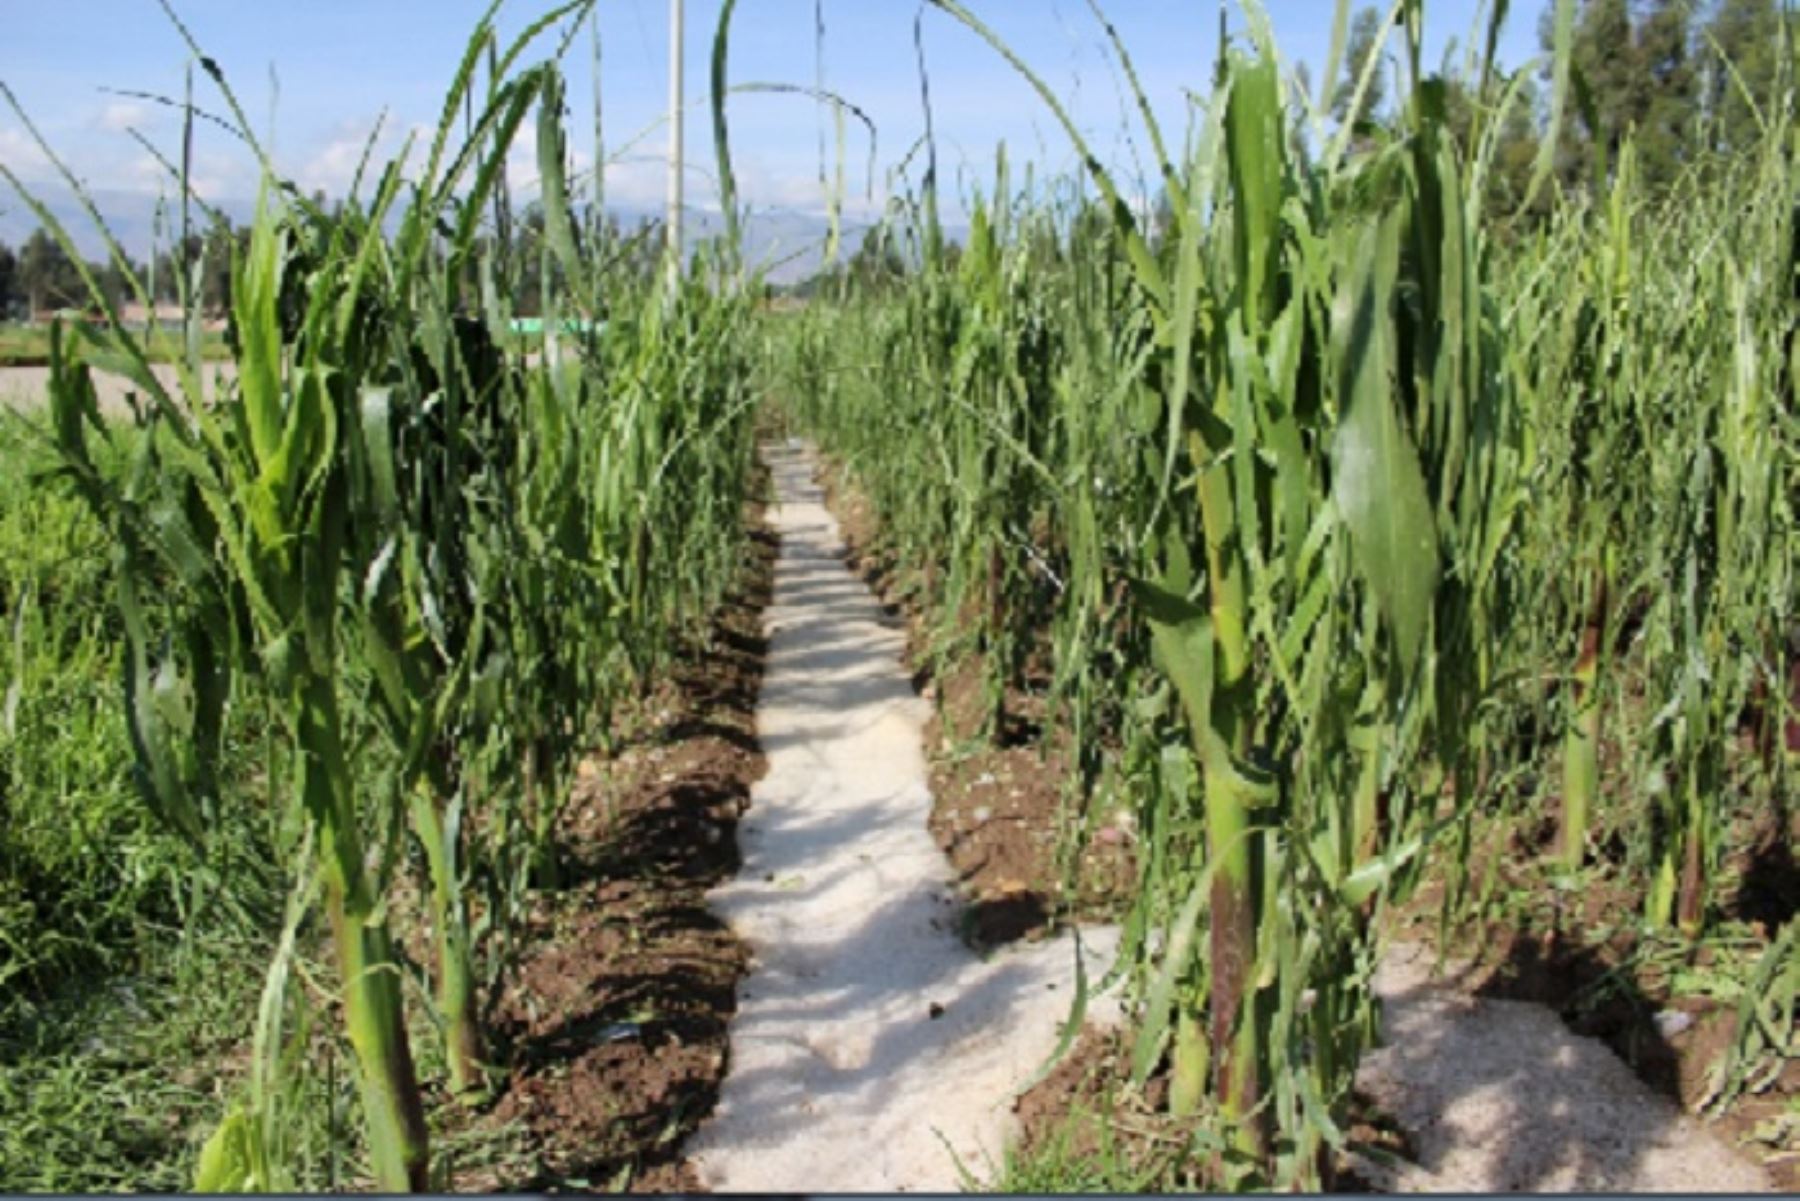 Los cultivos afectados son maíz, papa, alfalfa, olluco y habas, siendo el anexo de Hualahoyo el más perjudicado por la granizada, donde un promedio de 50 hectáreas de maíz y 20 hectáreas de papa se dañaron.